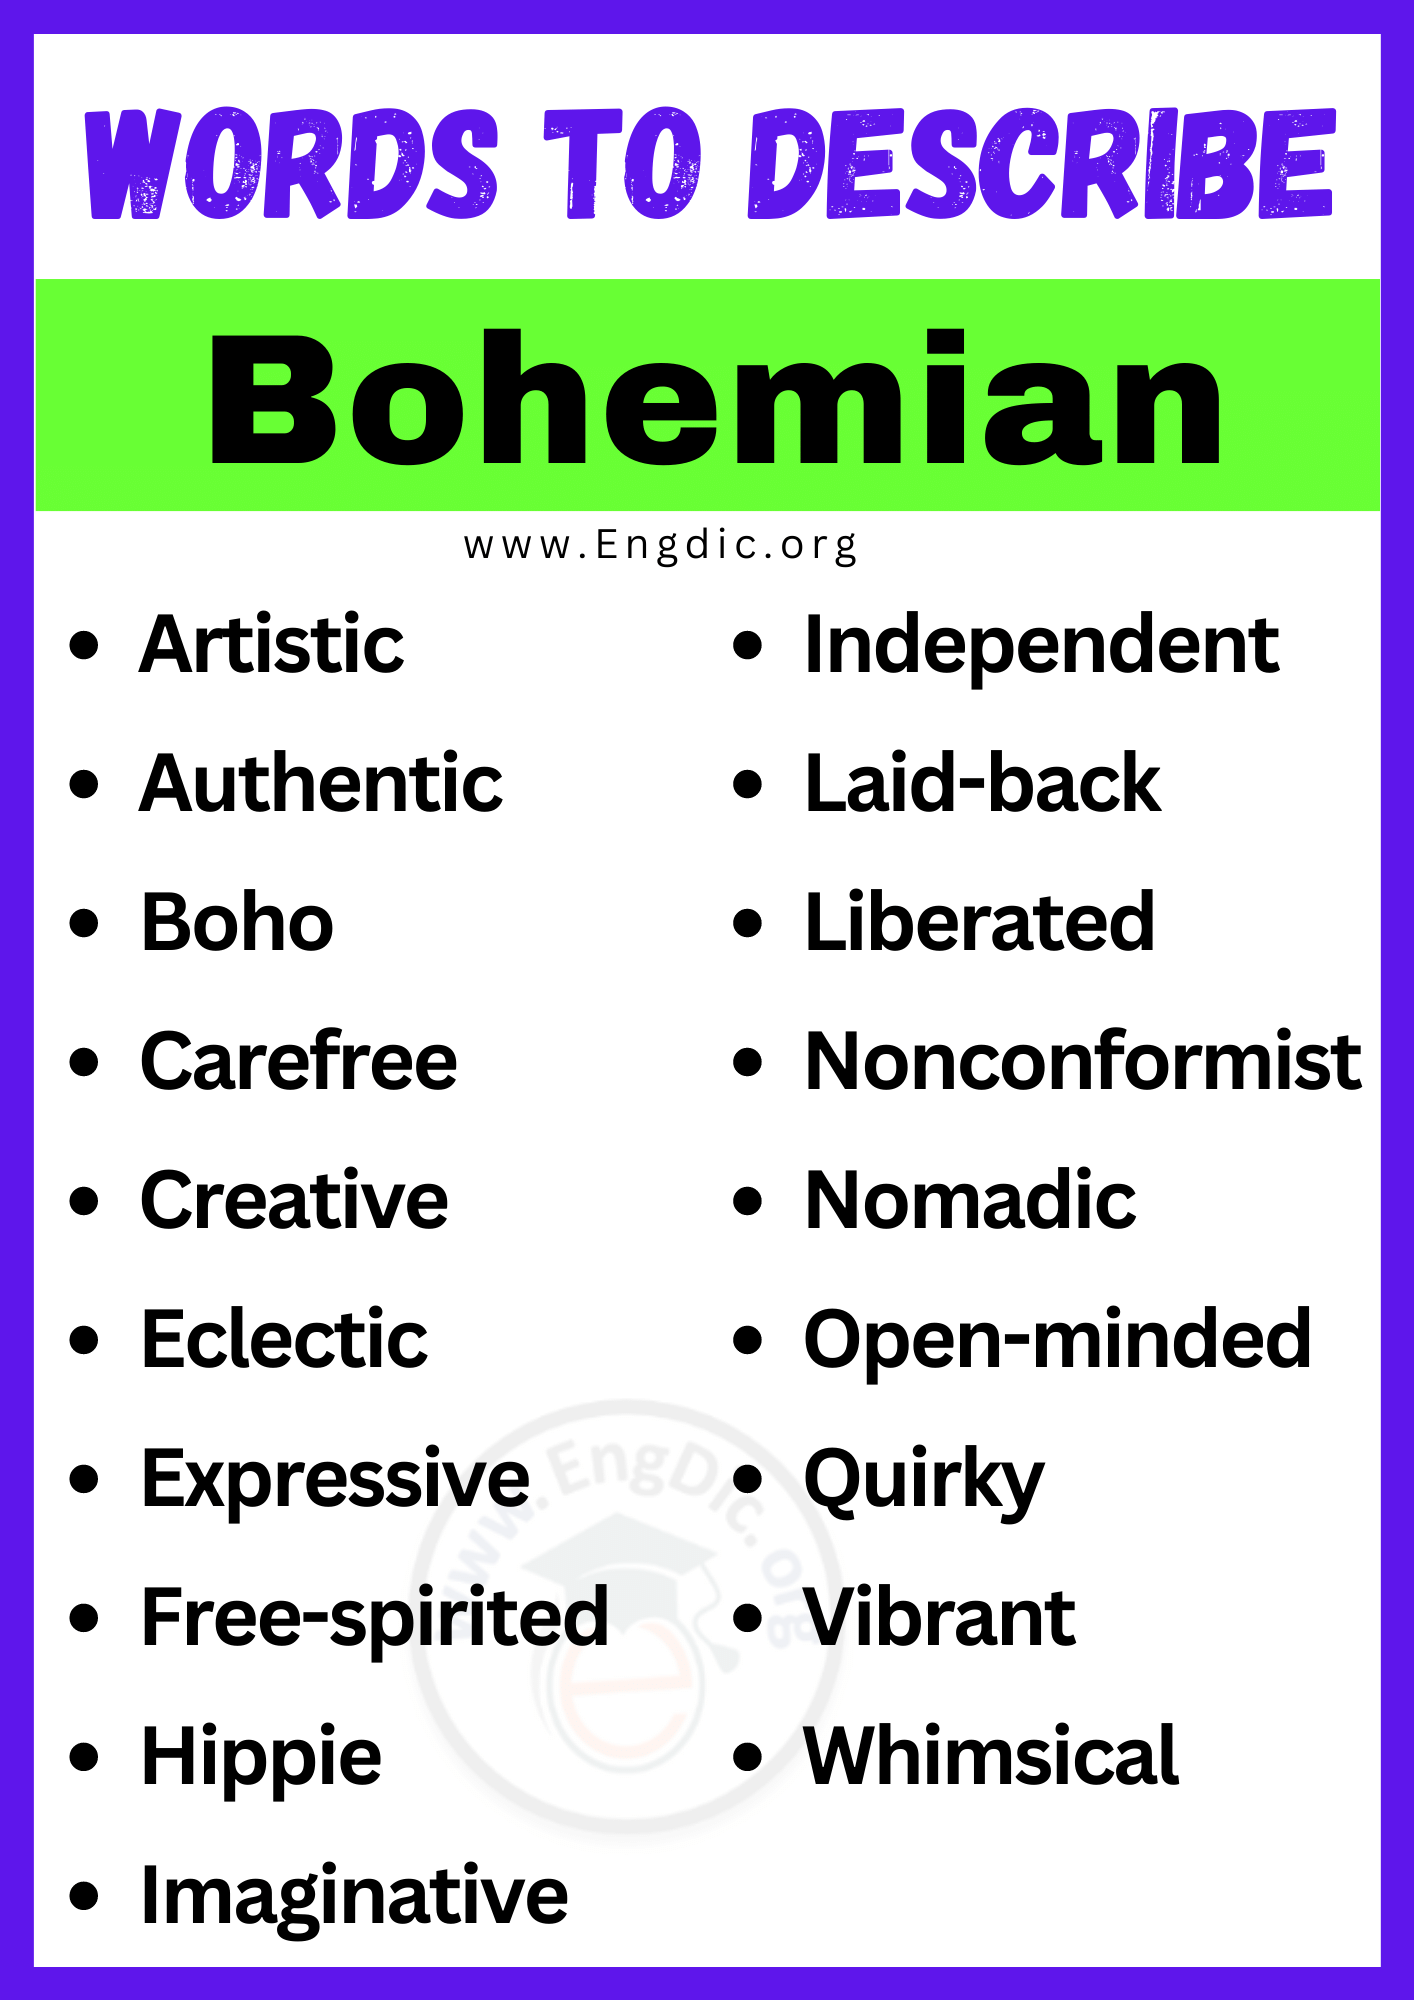 Words to Describe Bohemian